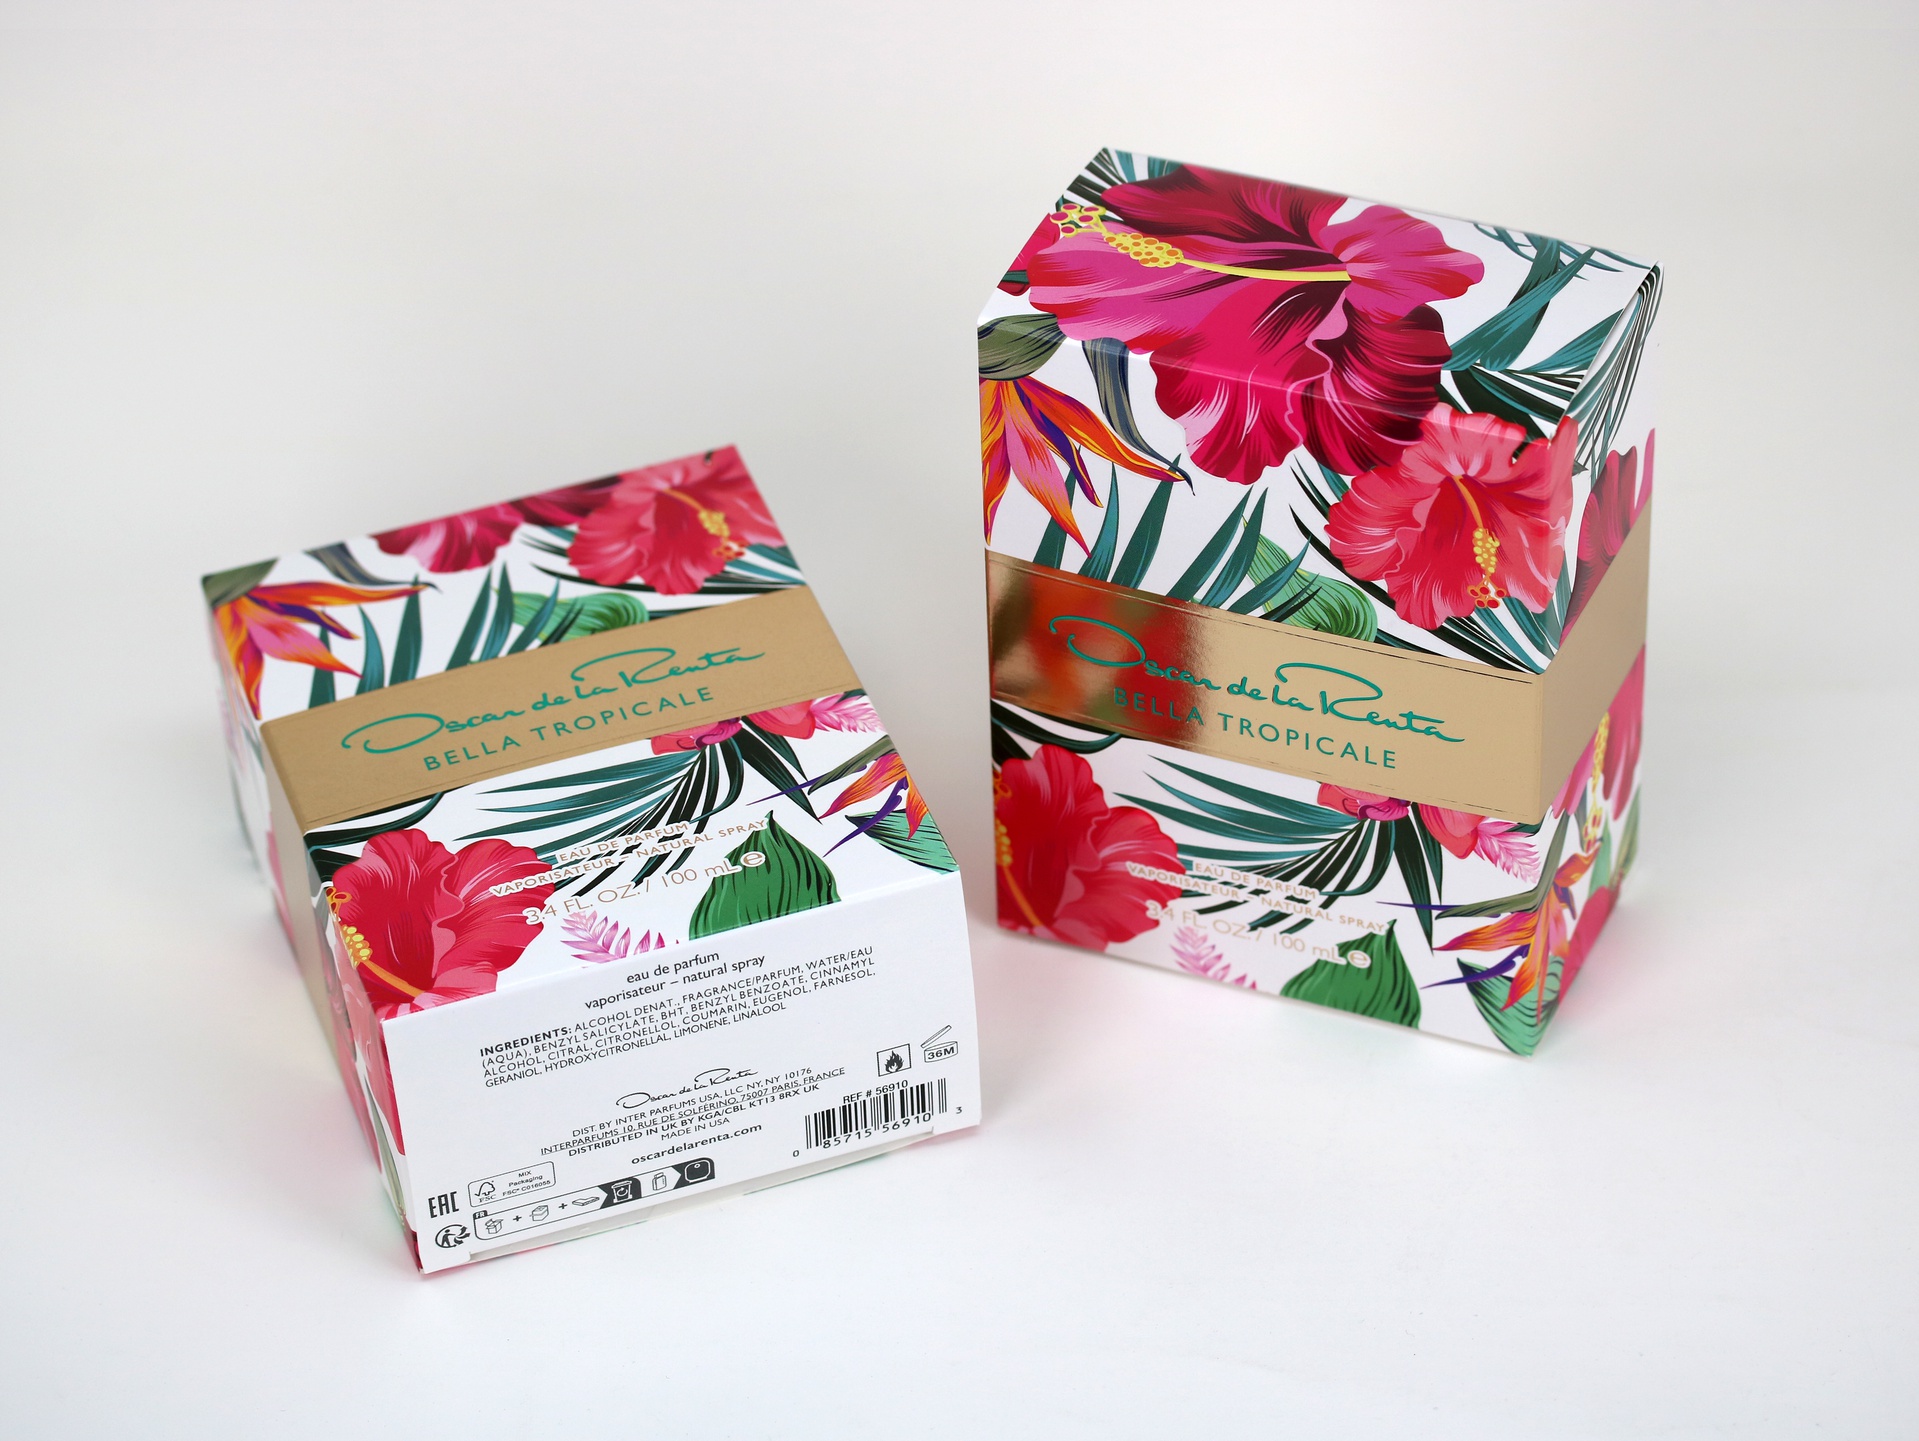 Oscar de la Renta Bella Tropicale packaging